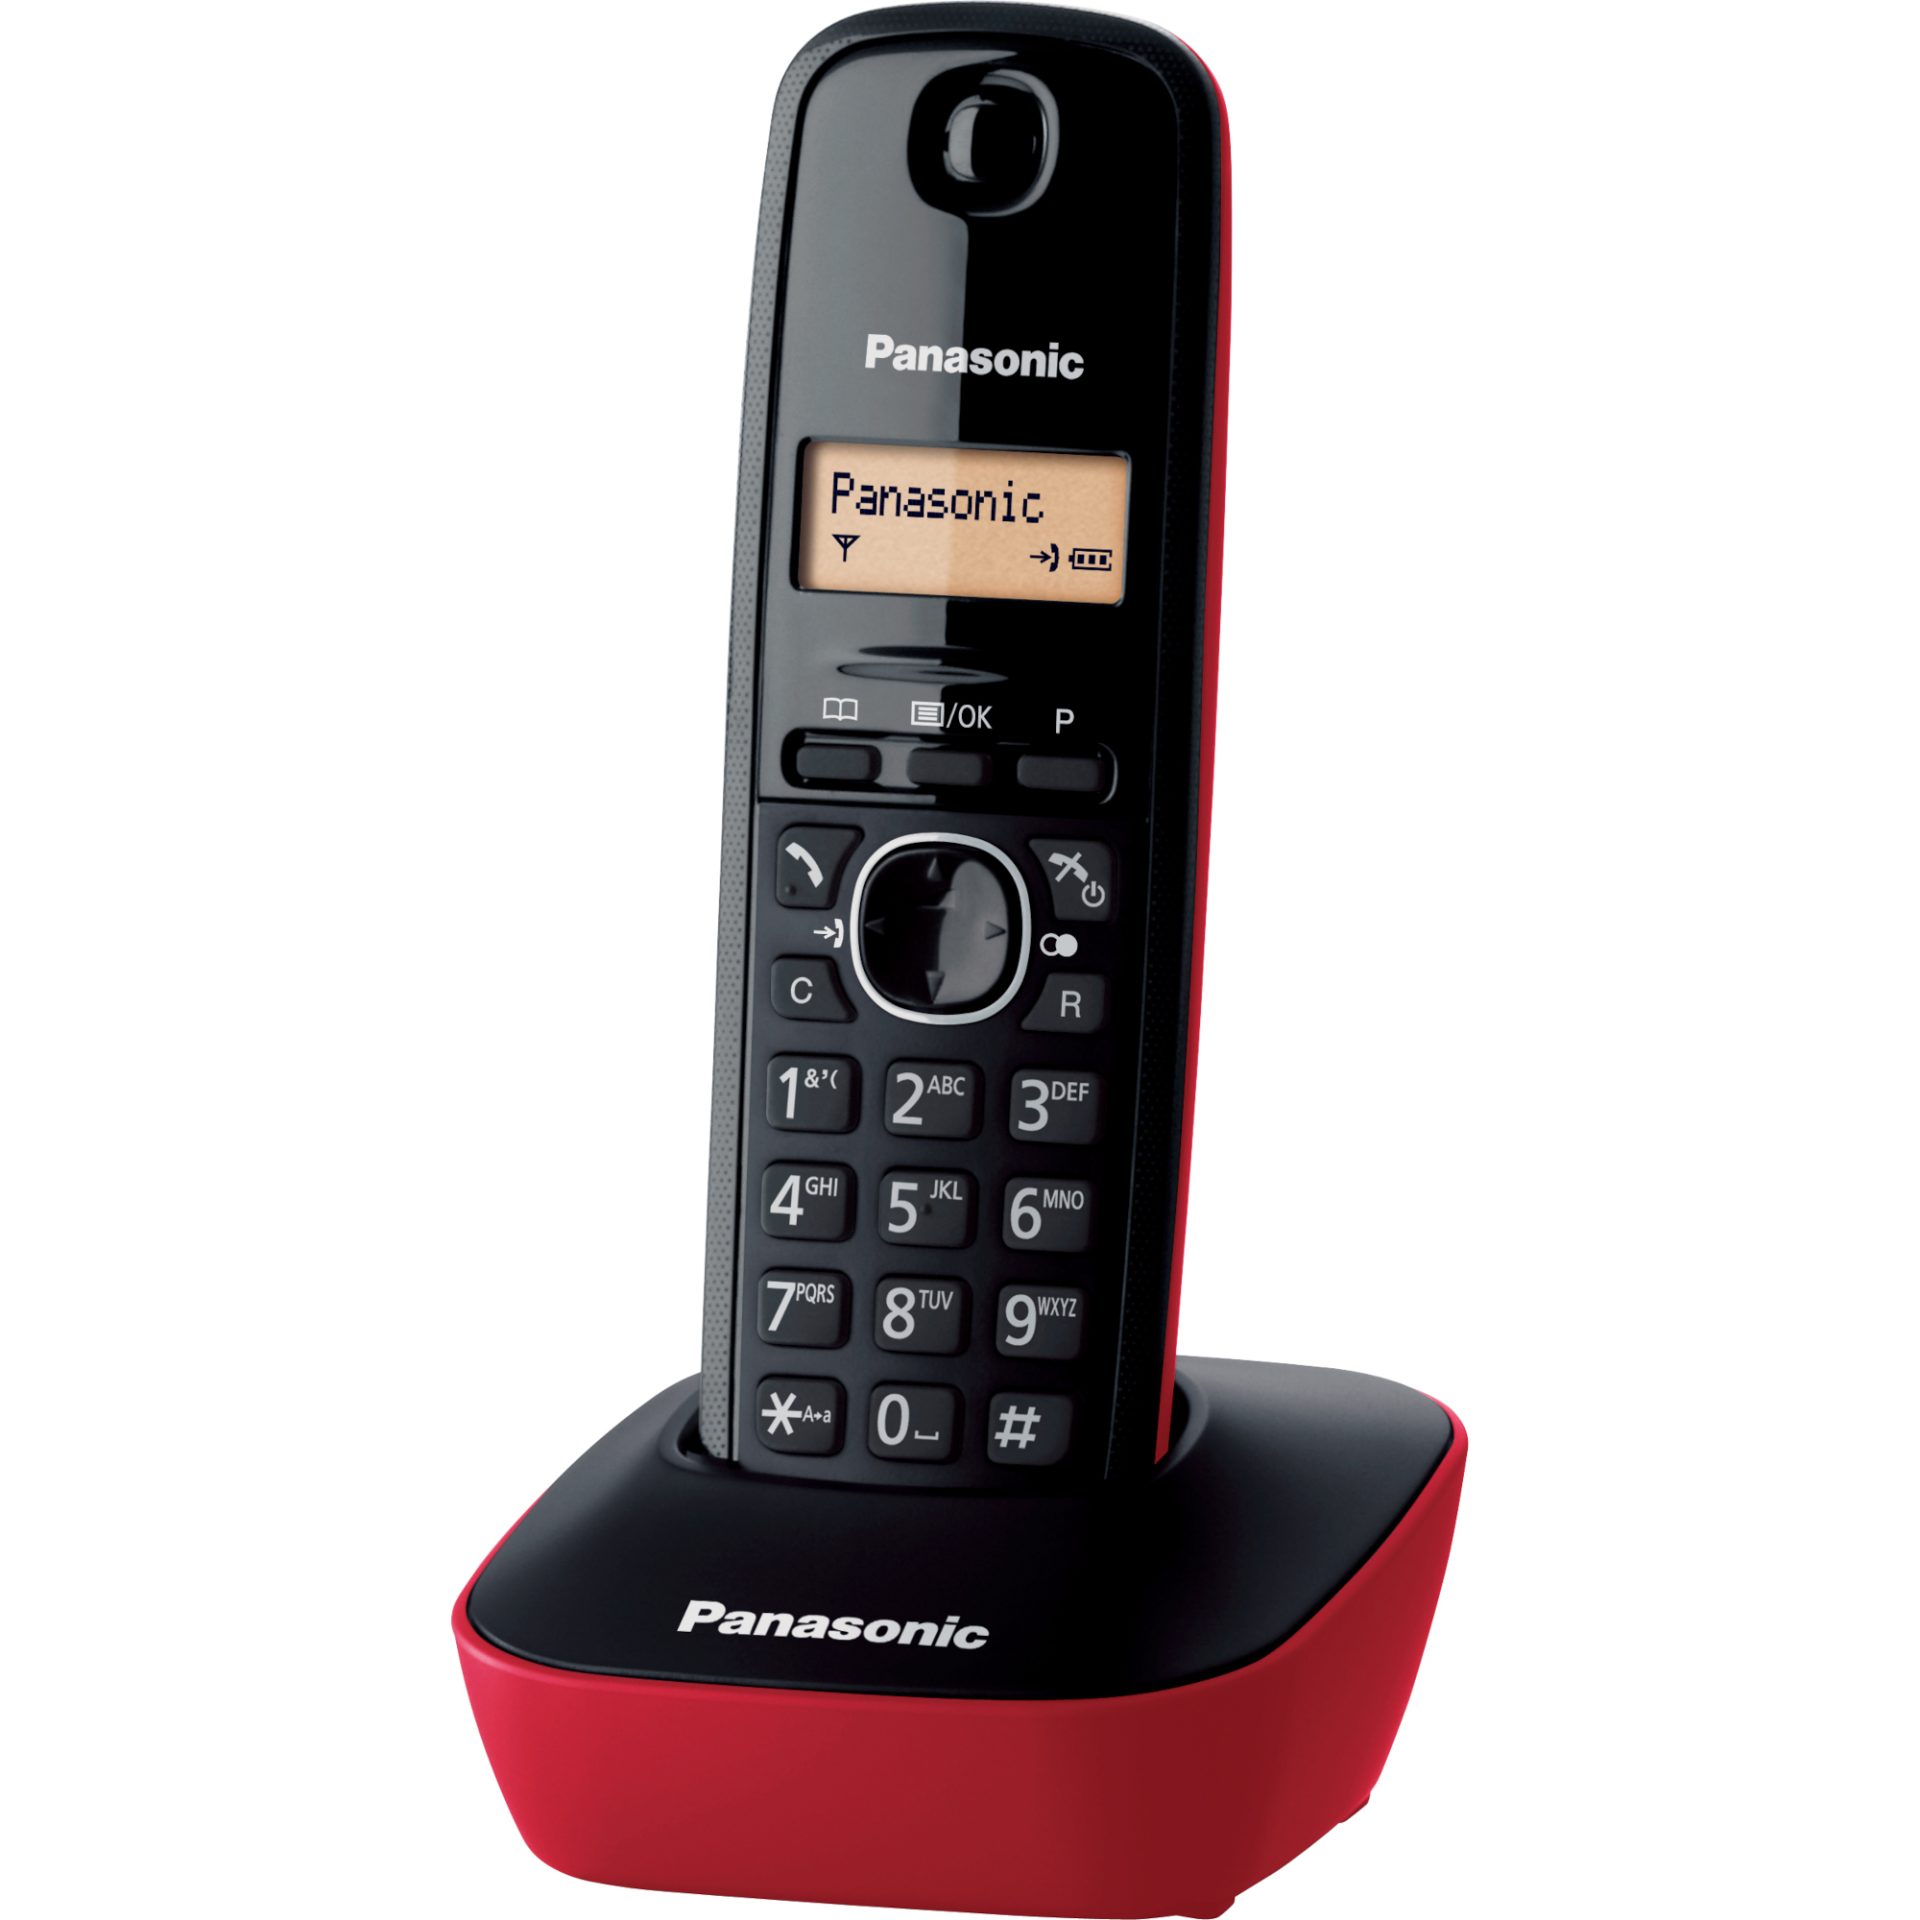 Panasonic KX-TG1611 DECT bezdrátový telefon (snadné použití, telefonní seznam 50 položek, podsvícený LCD displej, hodiny, budík), černá a červená